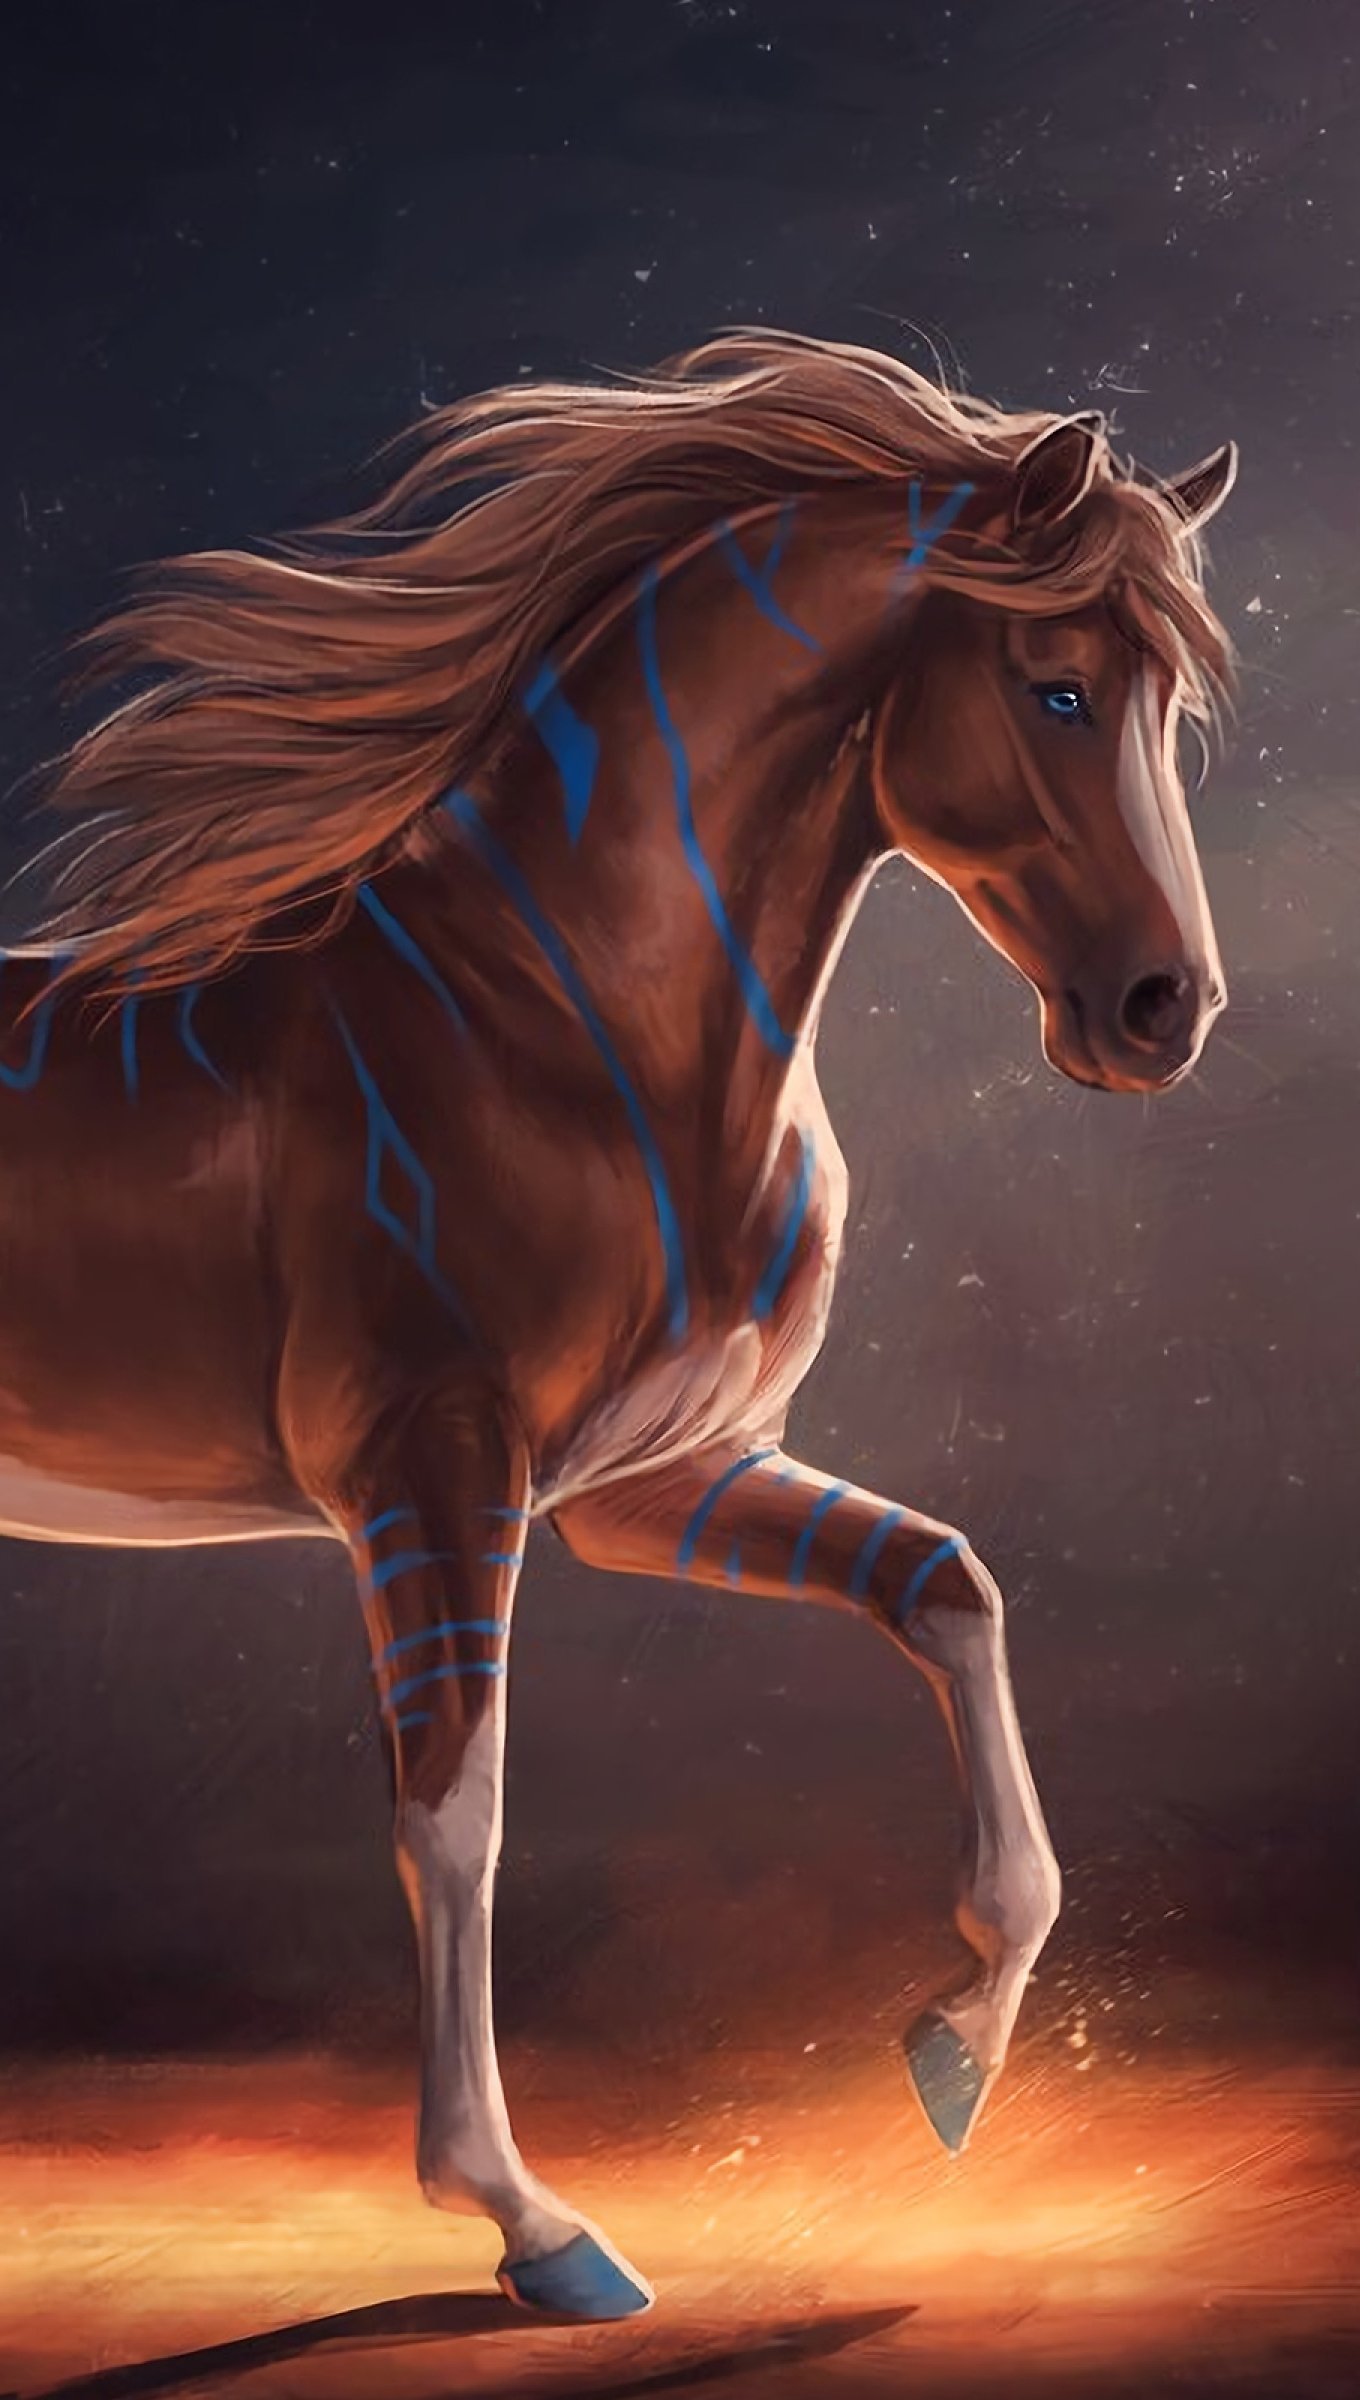 Wallpaper Horse Digital Art Vertical